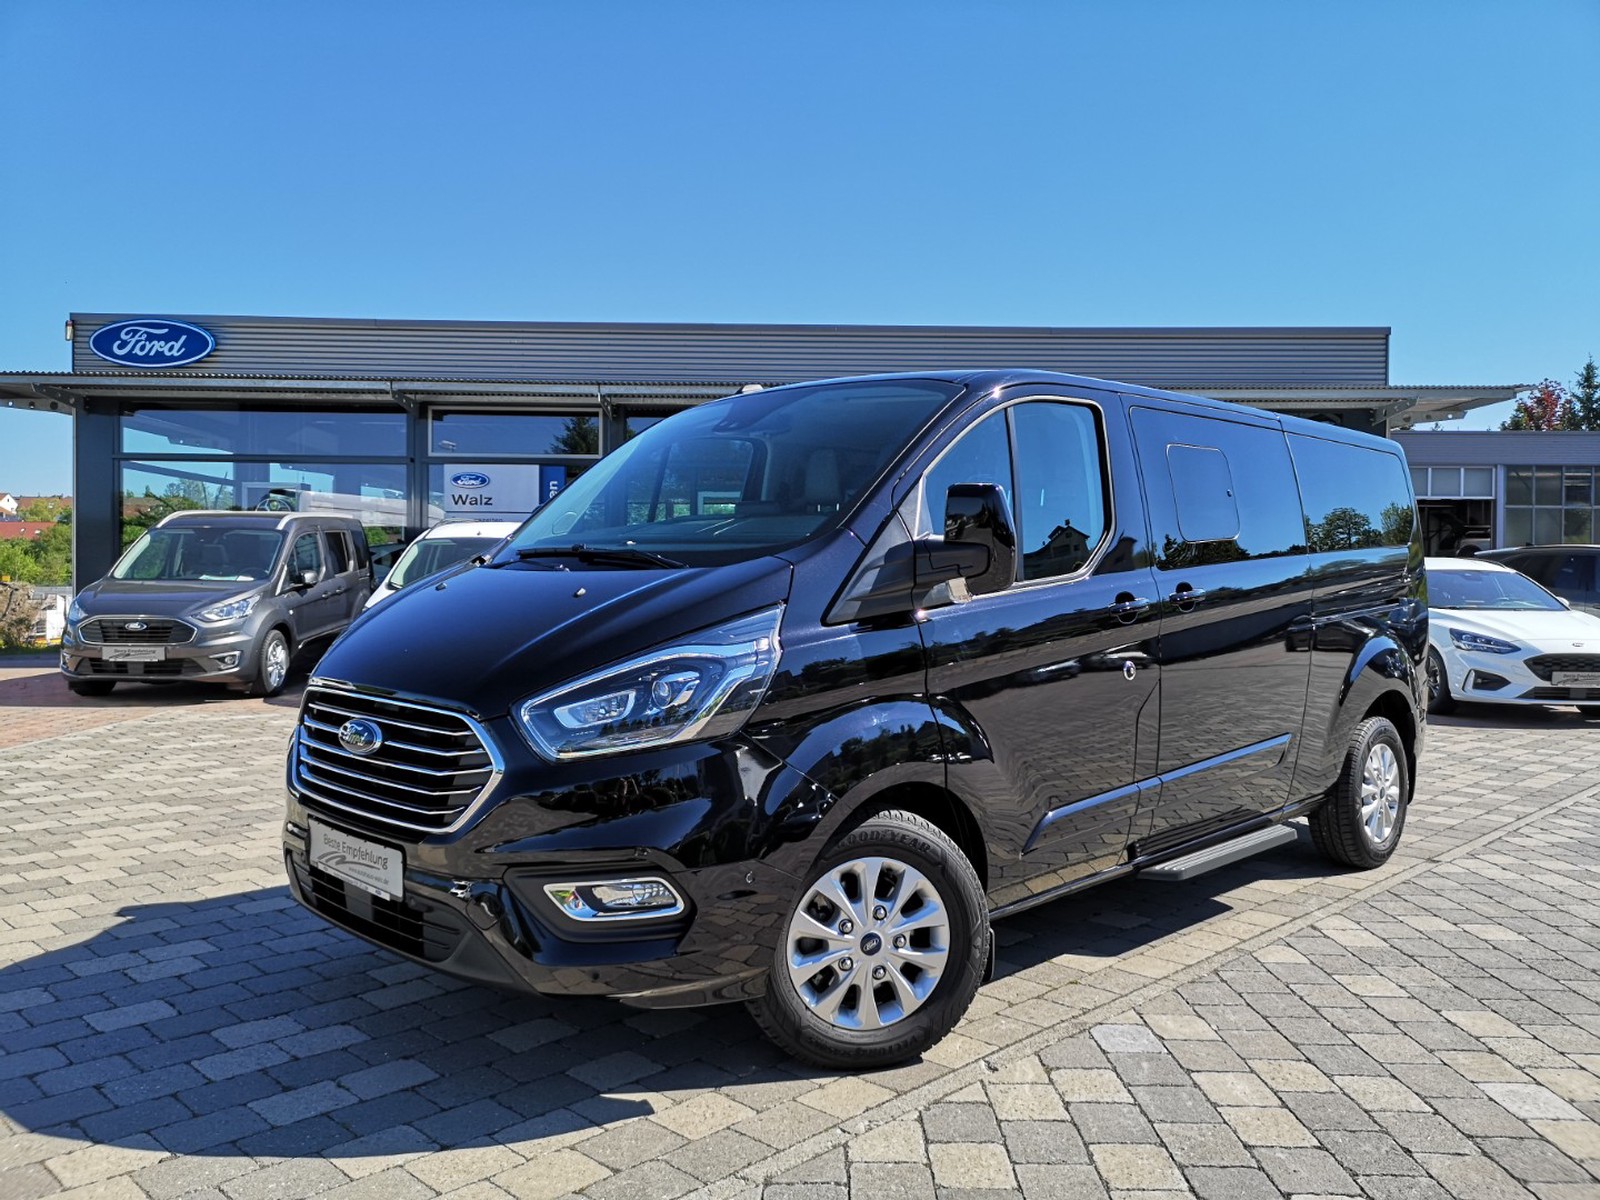 Ford Tourneo Custom gebraucht kaufen in Nagold Preis 36590 eur